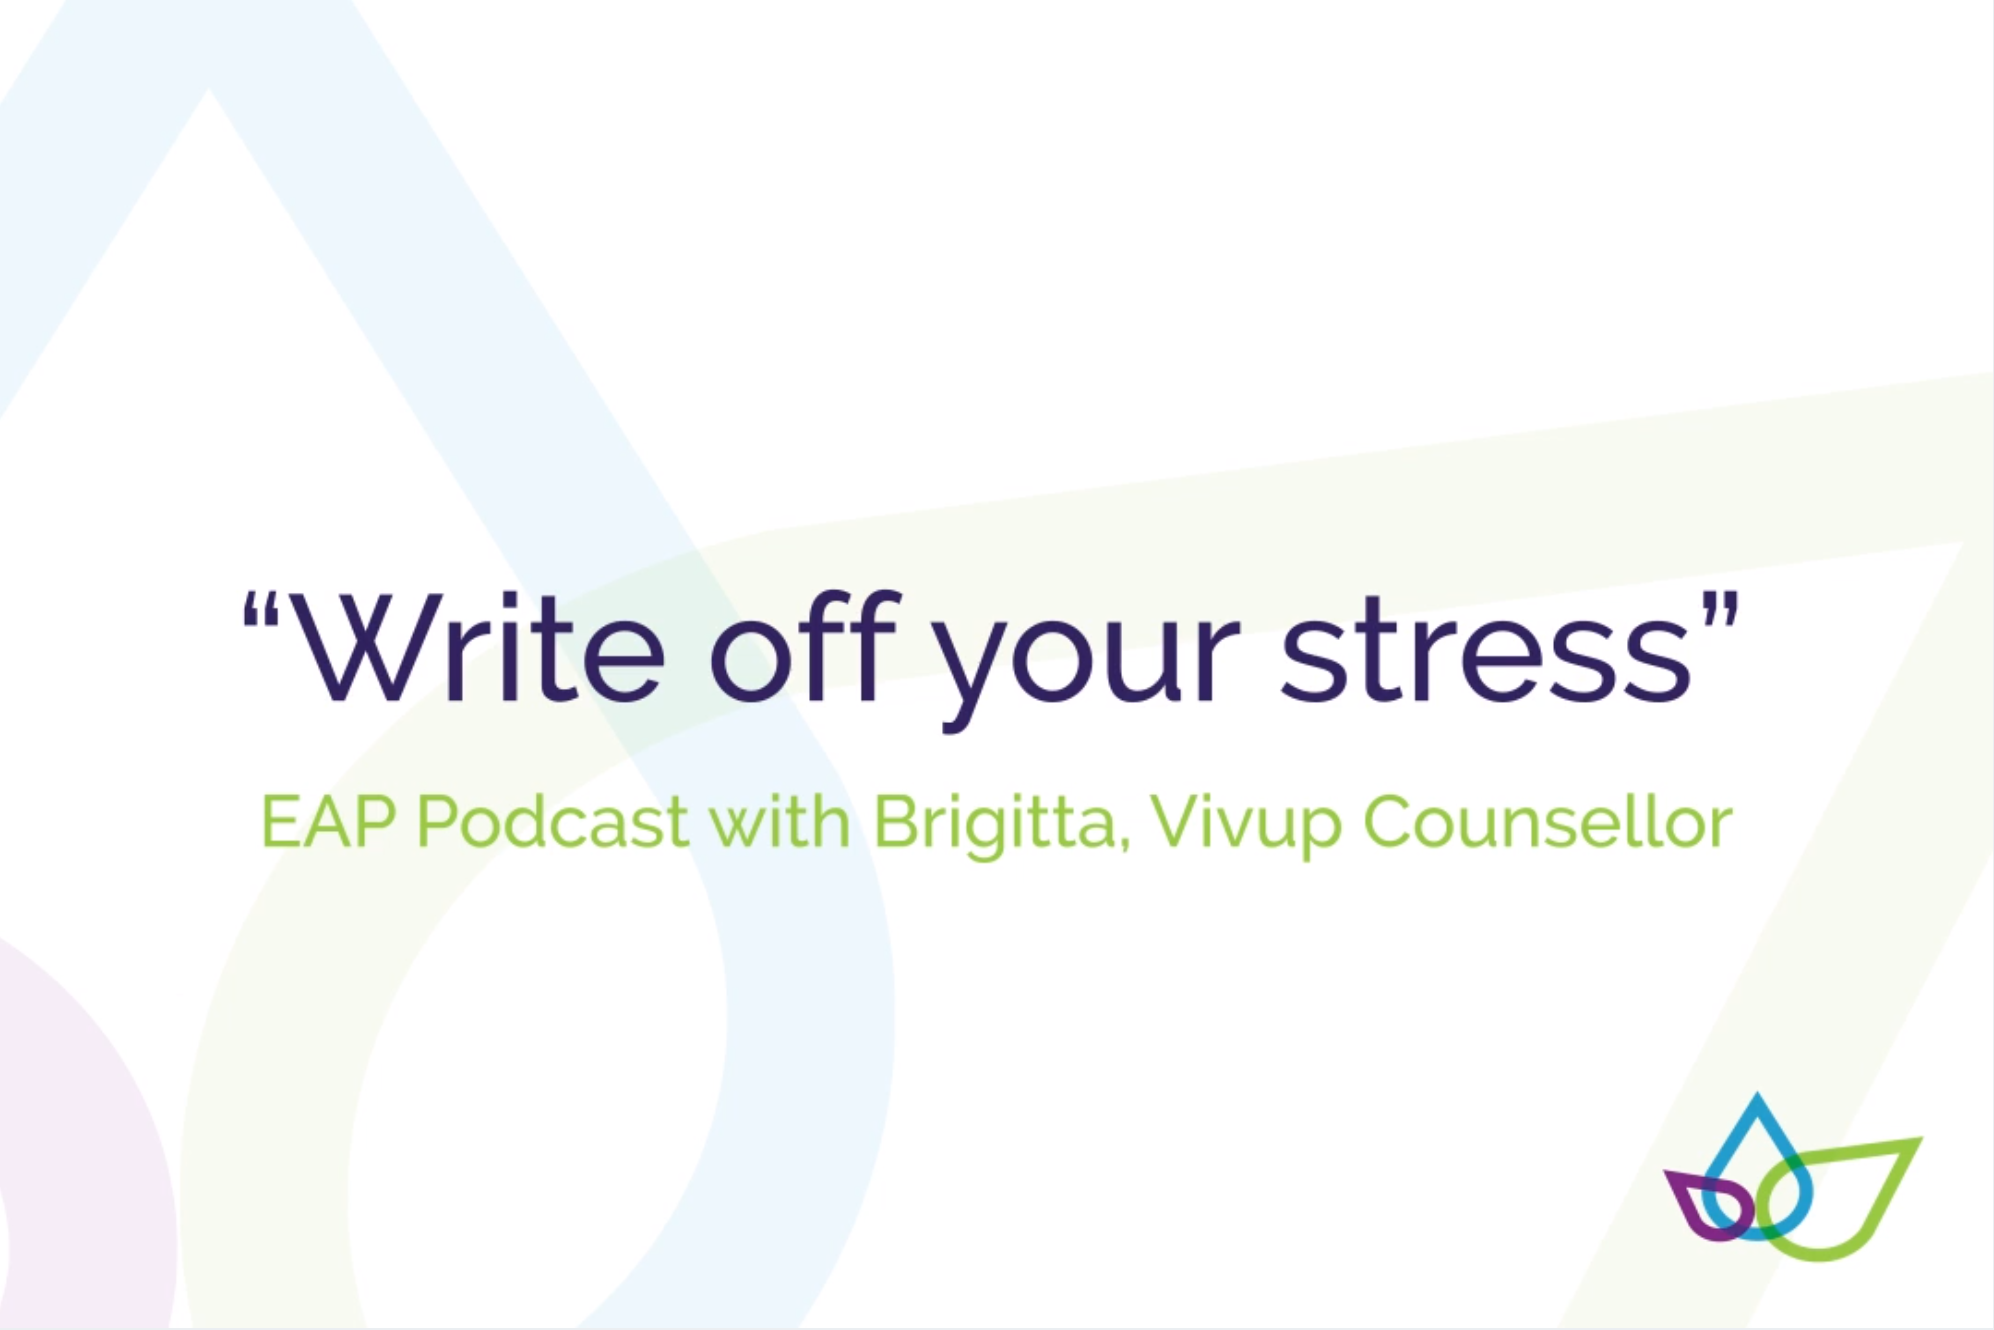 EAP Podcast thumbnail on stress